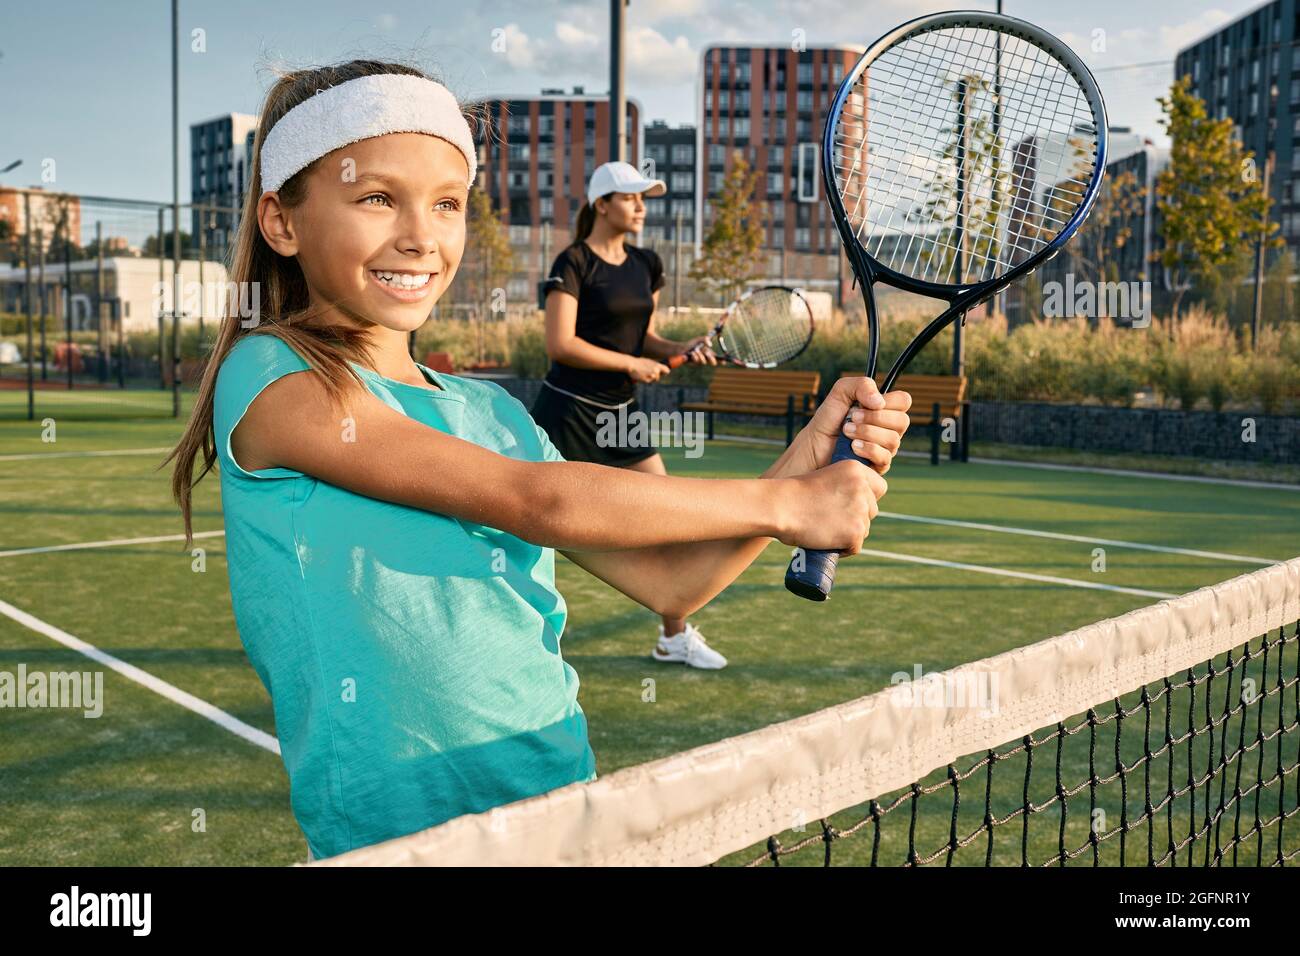 Piccola ragazza sorridente giocatore di tennis con il suo partner allenatore che gioca raddoppia a tennis sul campo d'erba in giorno di sole Foto Stock